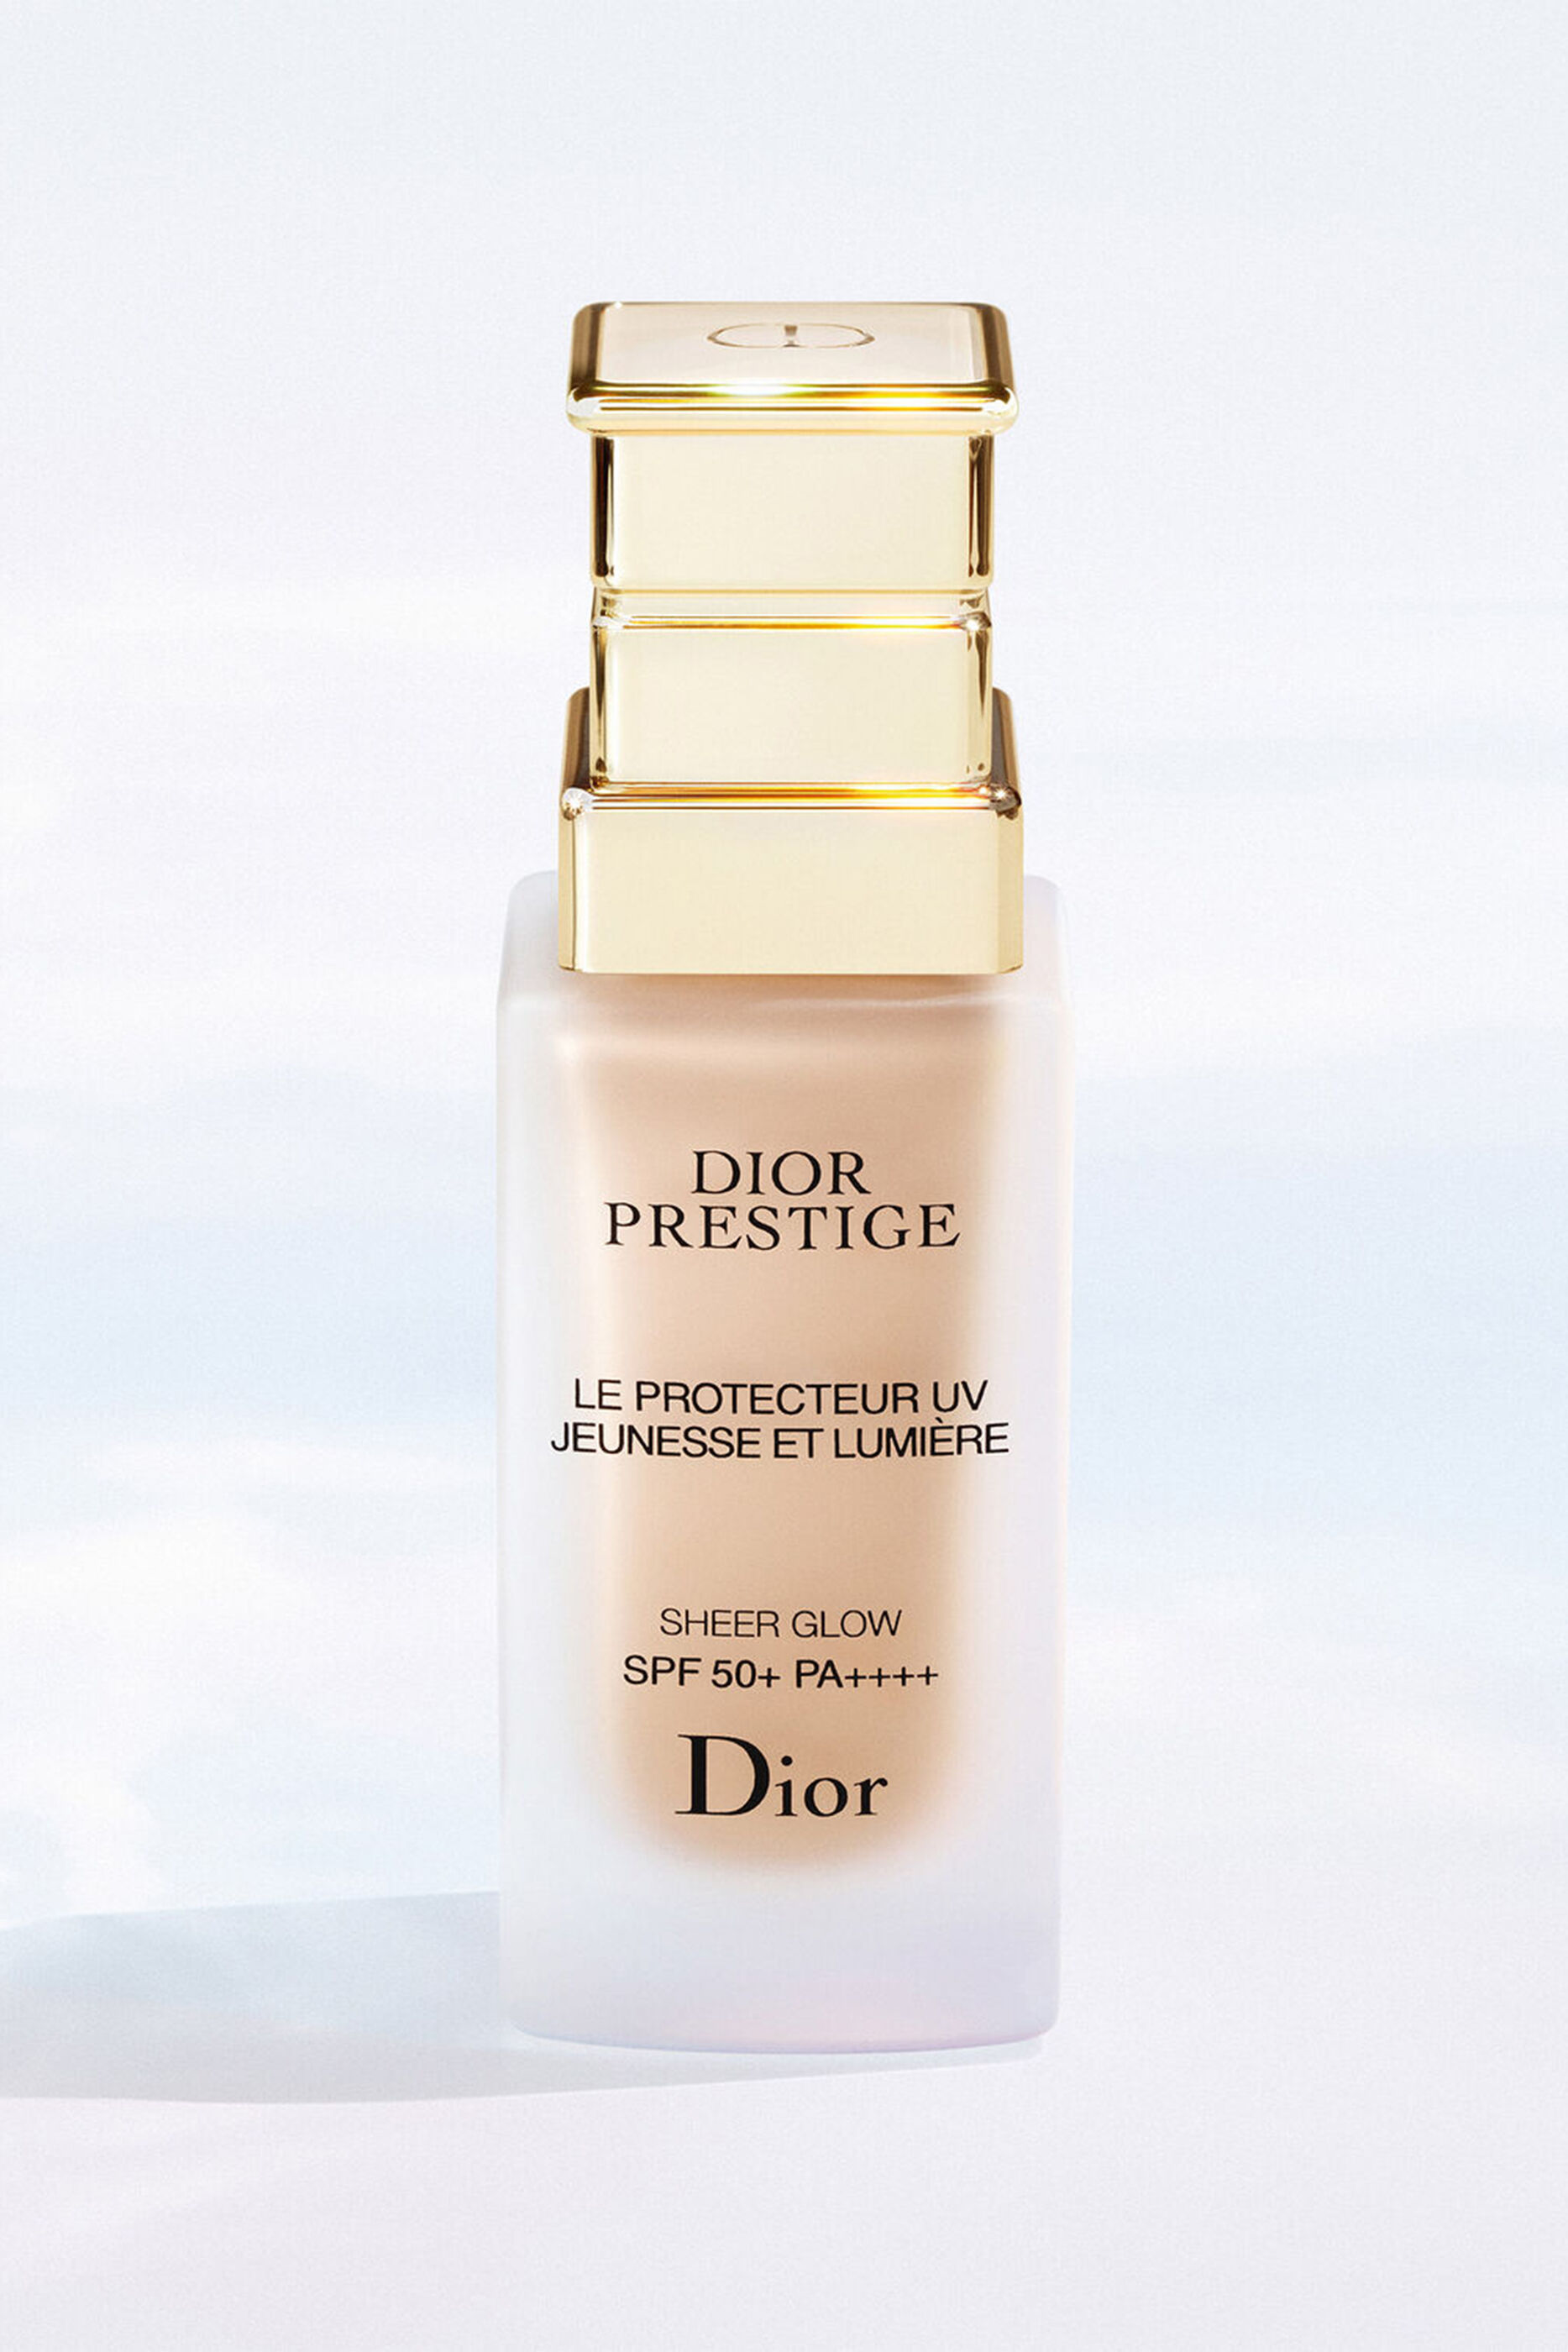 Dior Prestige LightIn White  The collections  Skincare  DIOR